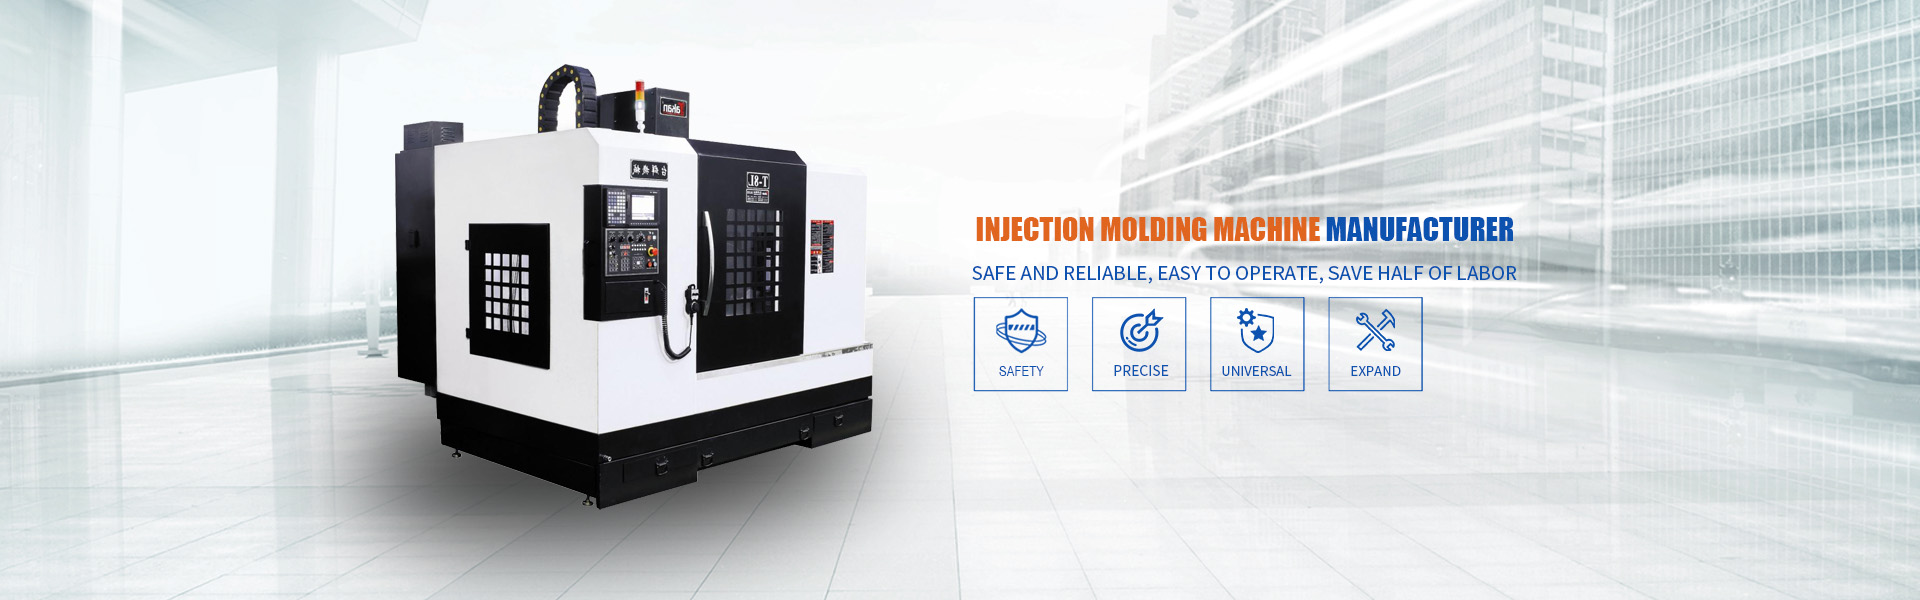 producción de moldeo por inyección, diseño de moldes, venta de máquinas de moldeo por inyección,Dongguan Haiteng Precision Machinery Co., Ltd.